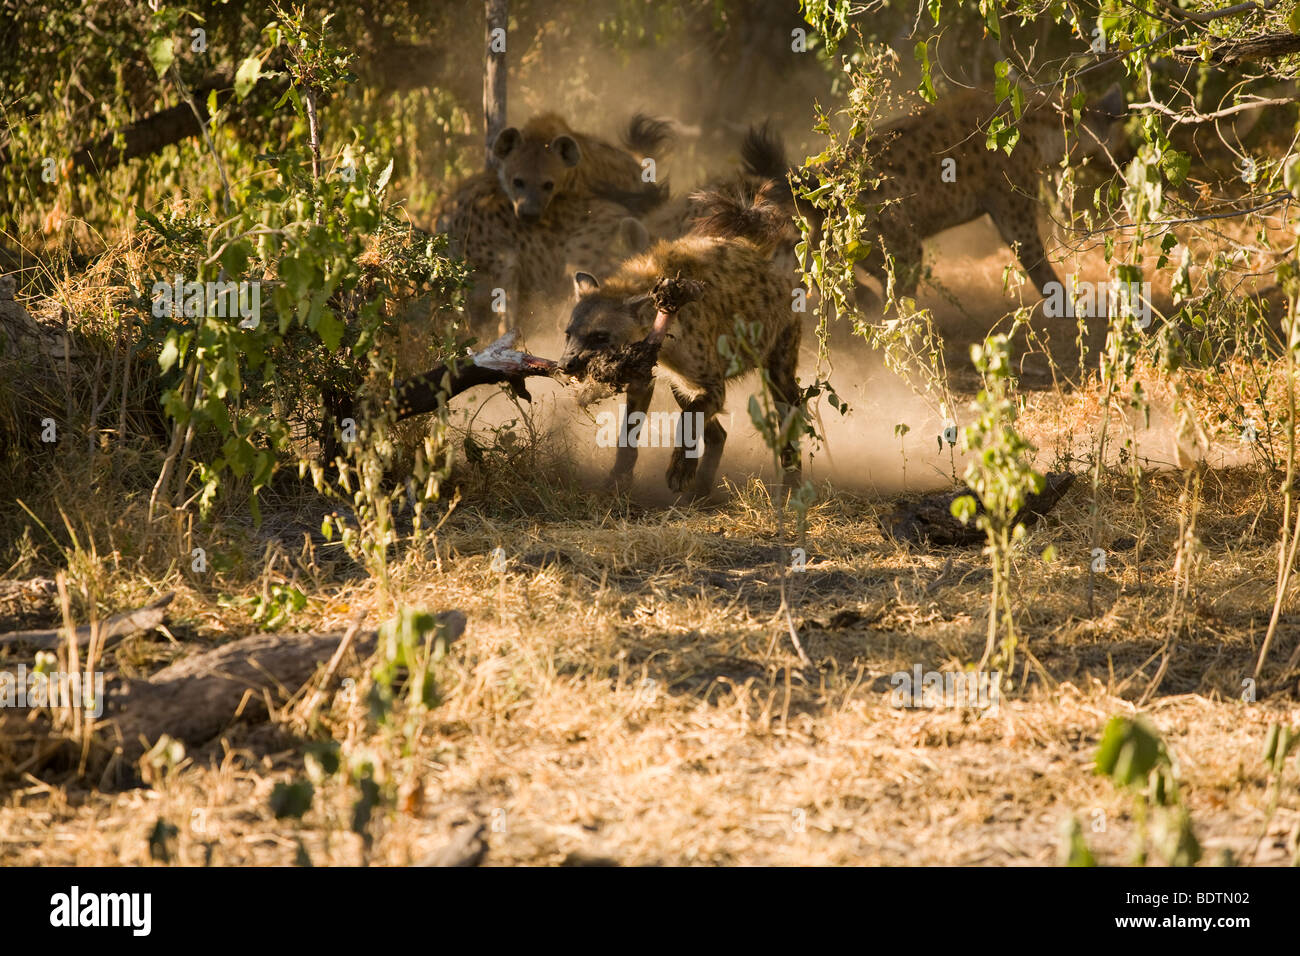 Tüpfelhyäne Crocuta crocuta Weg mit der Nahrung durch Mitglieder der Pack durch die sonnendurchfluteten Staub Aktion stoppen Verfolgungsjagd Okavango Delta Botswana gejagt Stockfoto